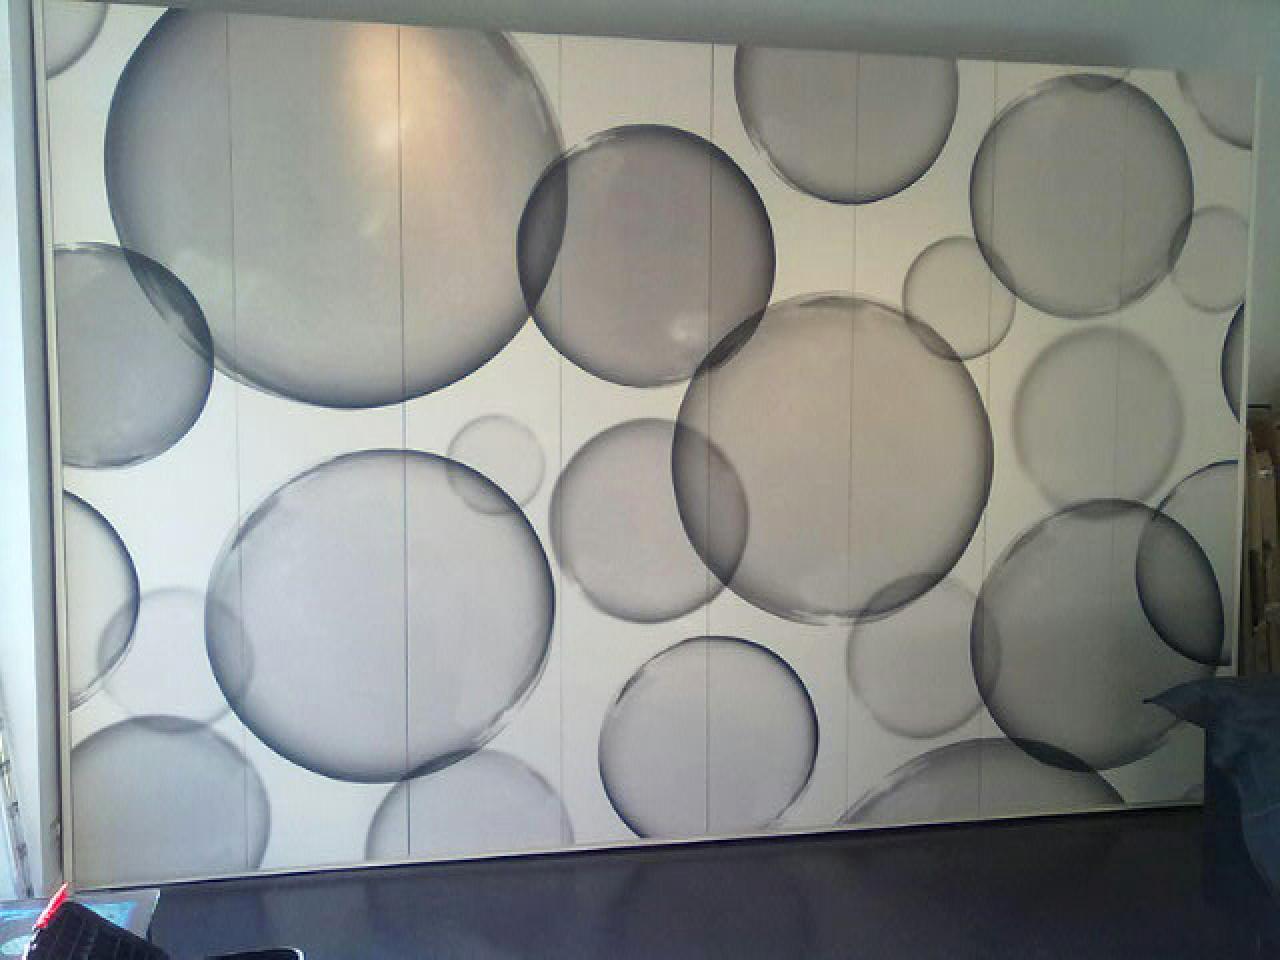 Mazzali 900 Wallpaper Wardrobe Cabinet Photo - 3d Funky Wallpaper Bubbles - HD Wallpaper 